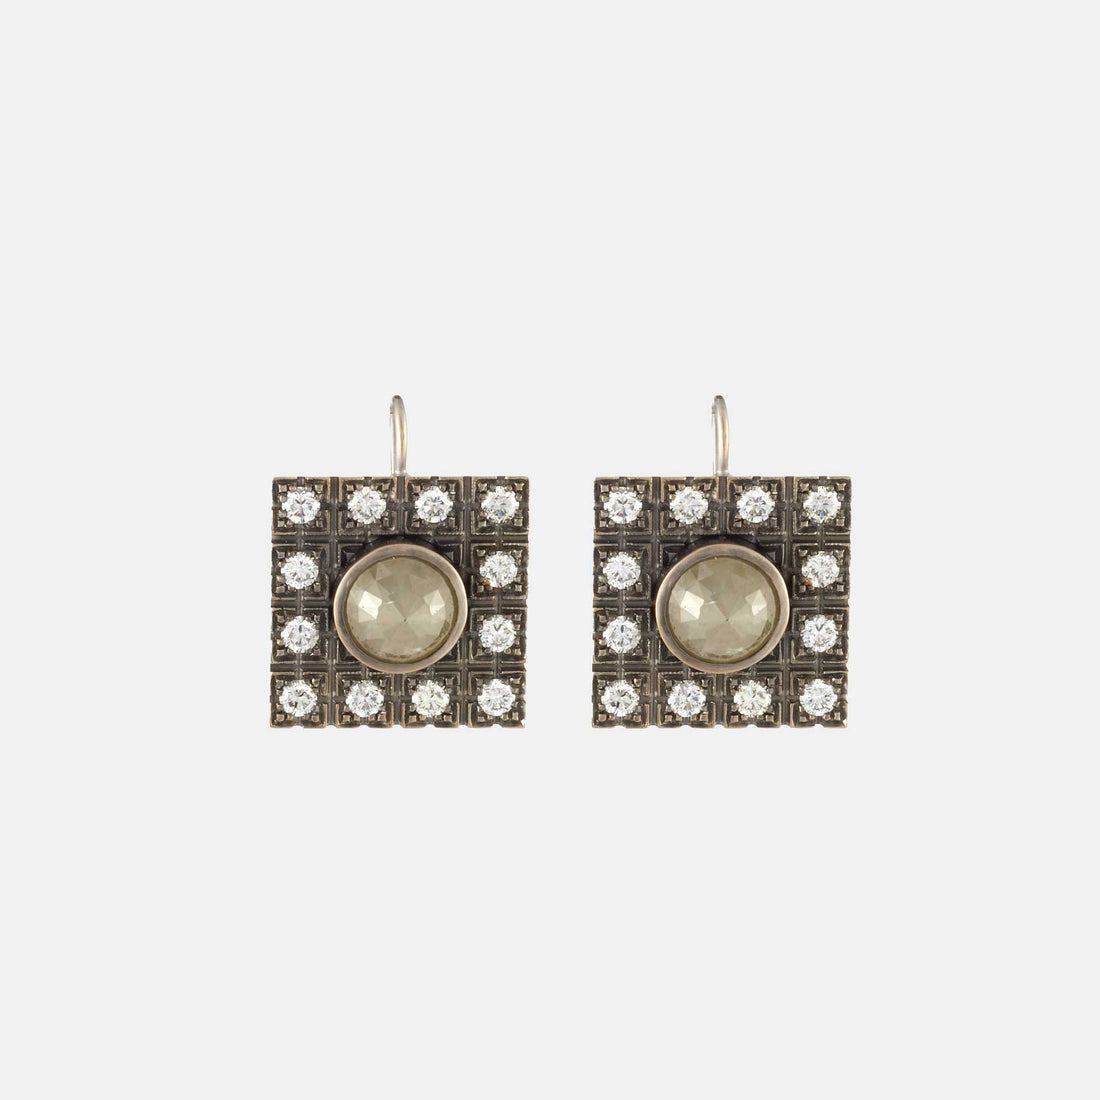 Square Renee earrings